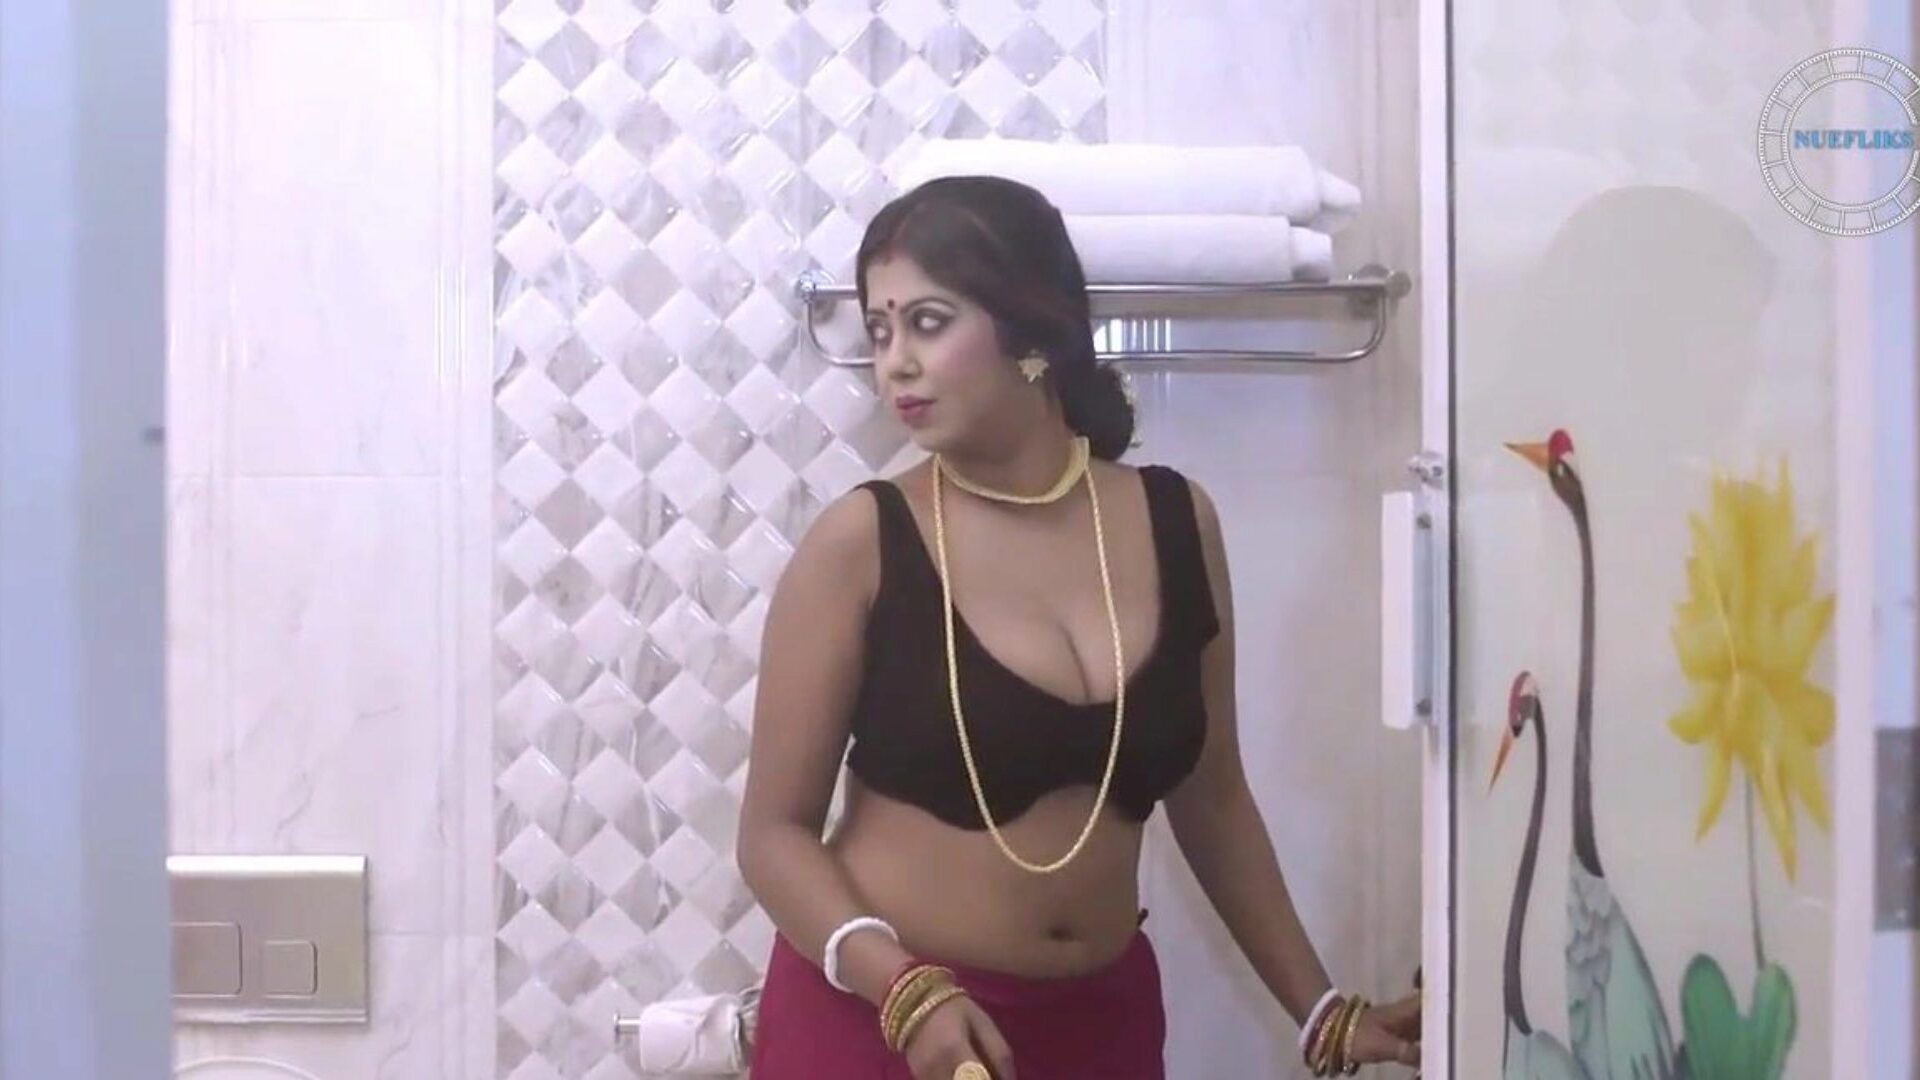 Shilpa Bhabhi